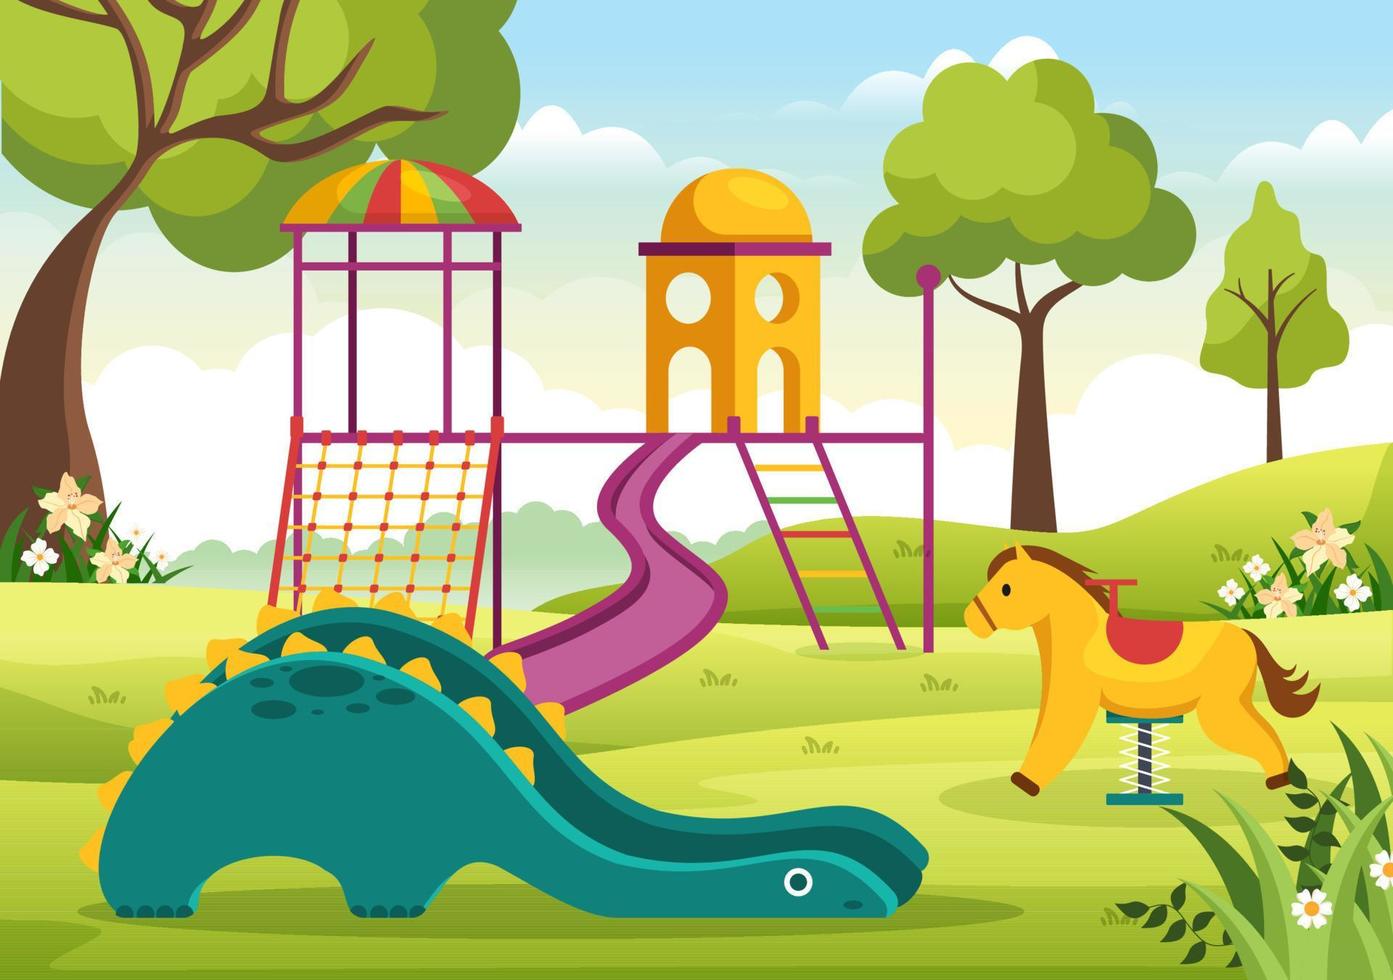 parque infantil com baloiços, escorregas, escadas de escalada e muito mais no parque de diversões para os mais pequenos brincarem na ilustração plana dos desenhos animados vetor